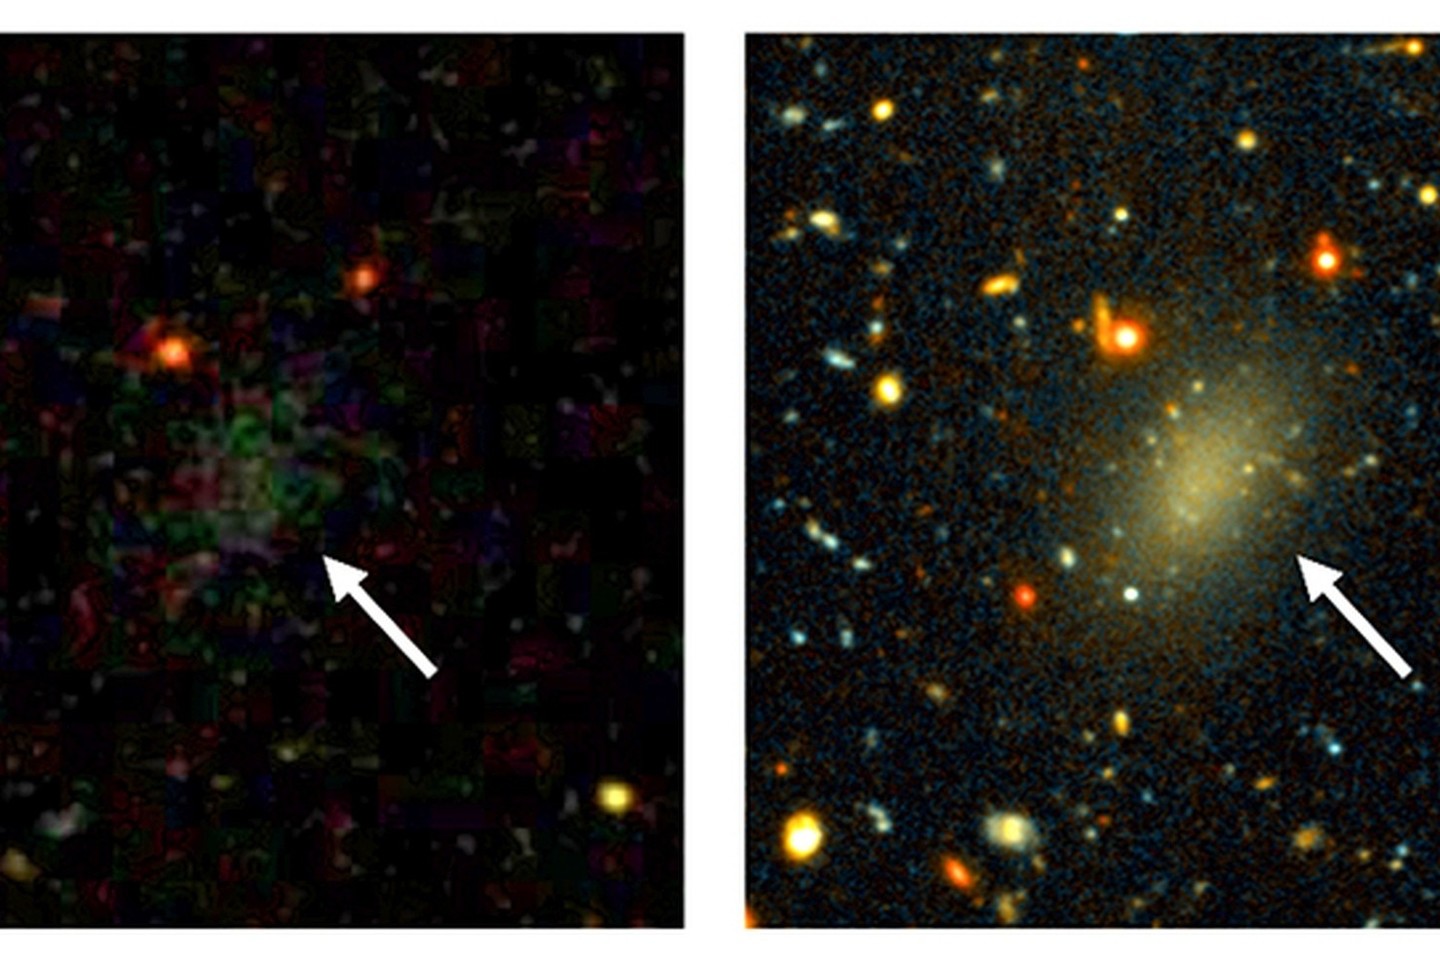 Galaktika Dragonfly 44 sudaryta kone vien iš tamsiosios materijos.<br>News.yale.edu nuotr.